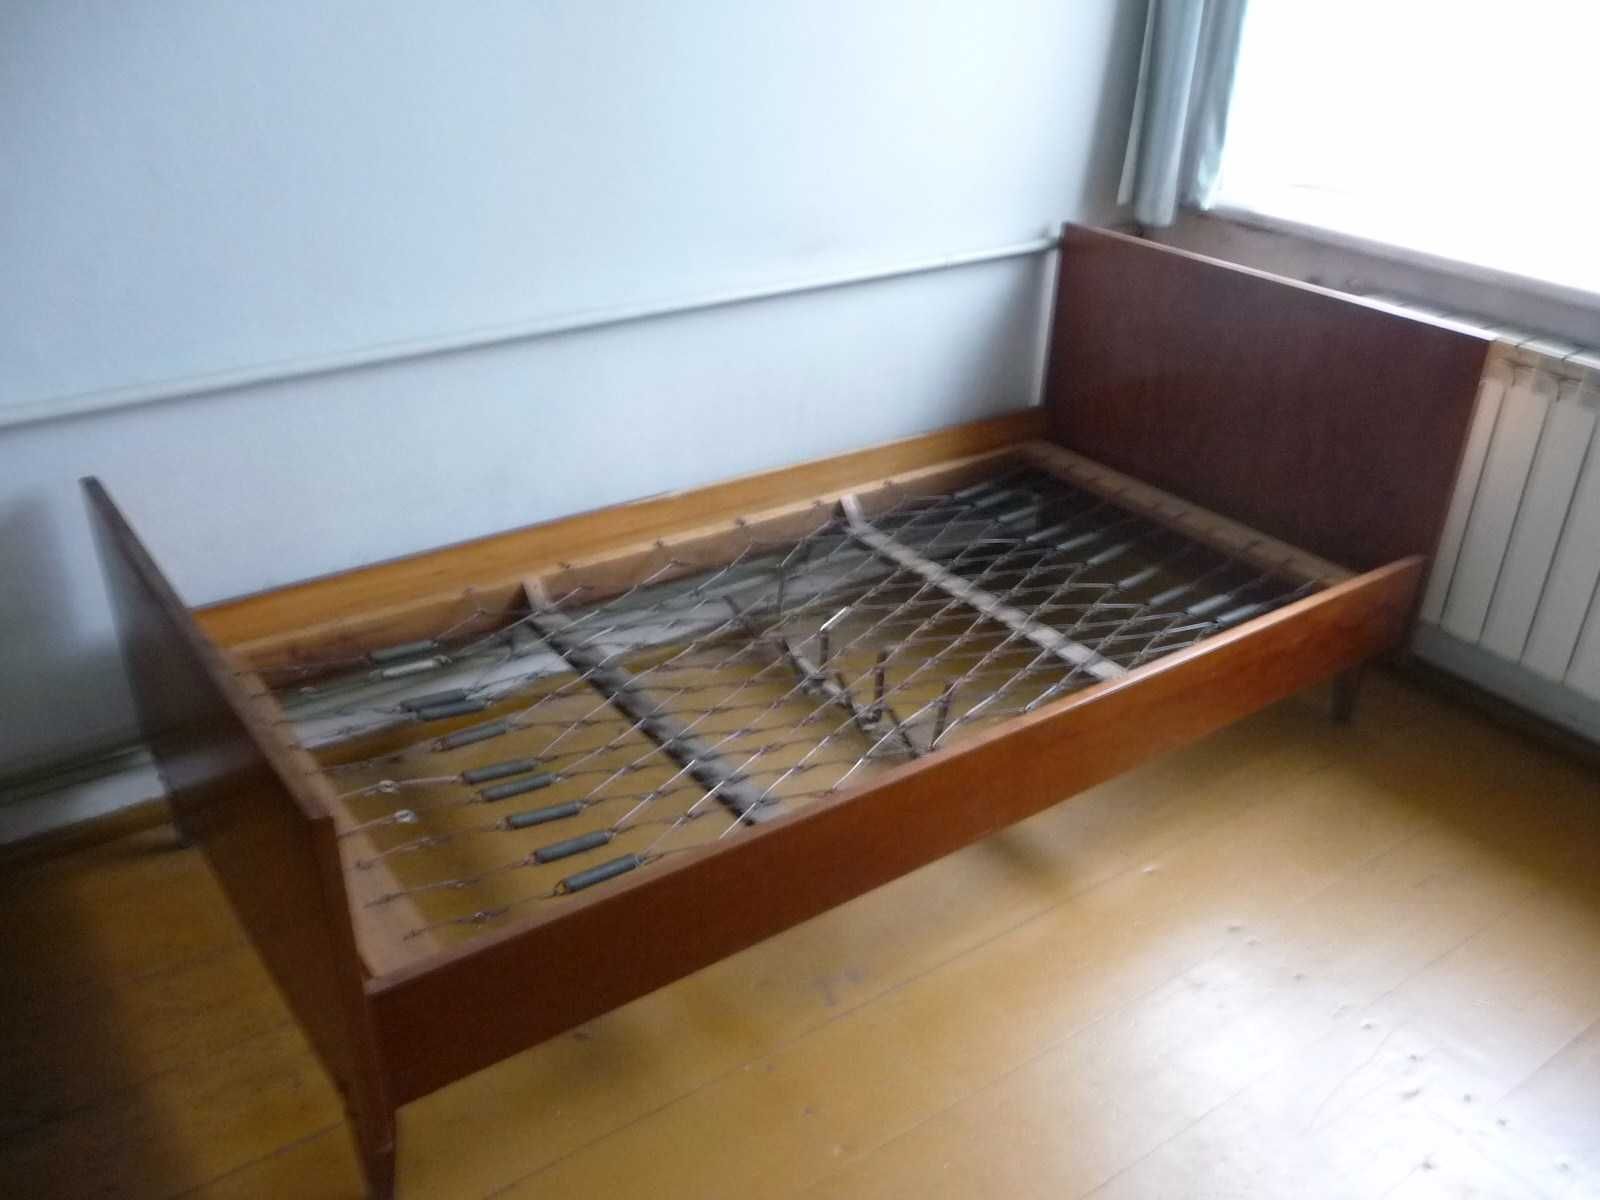 łóżko na sprężynach z okresu PRL